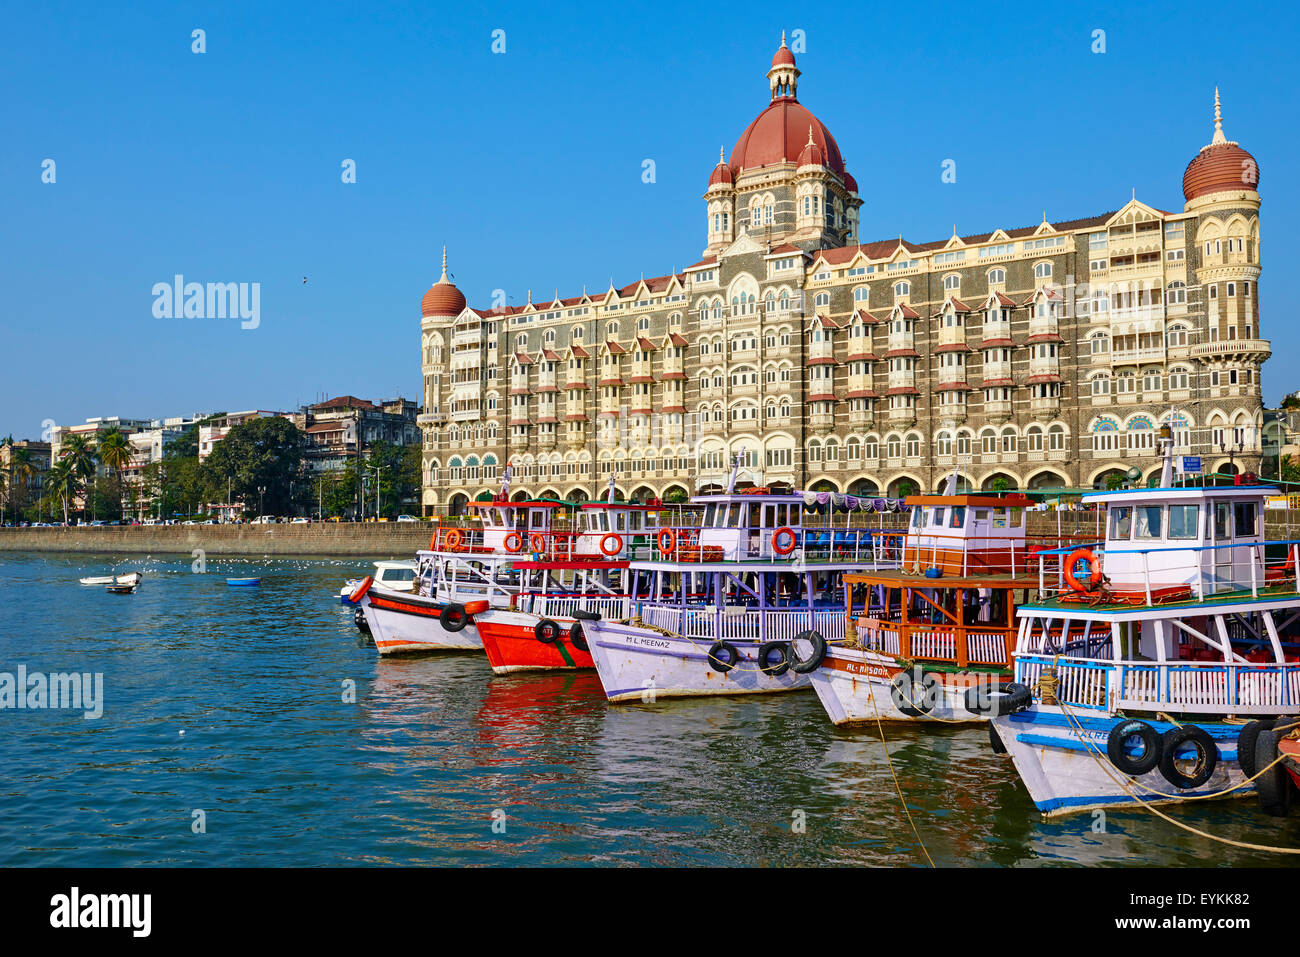 L'Inde, Maharashtra, Mumbai (Bombay), l'hôtel Taj Mahal Palace Banque D'Images